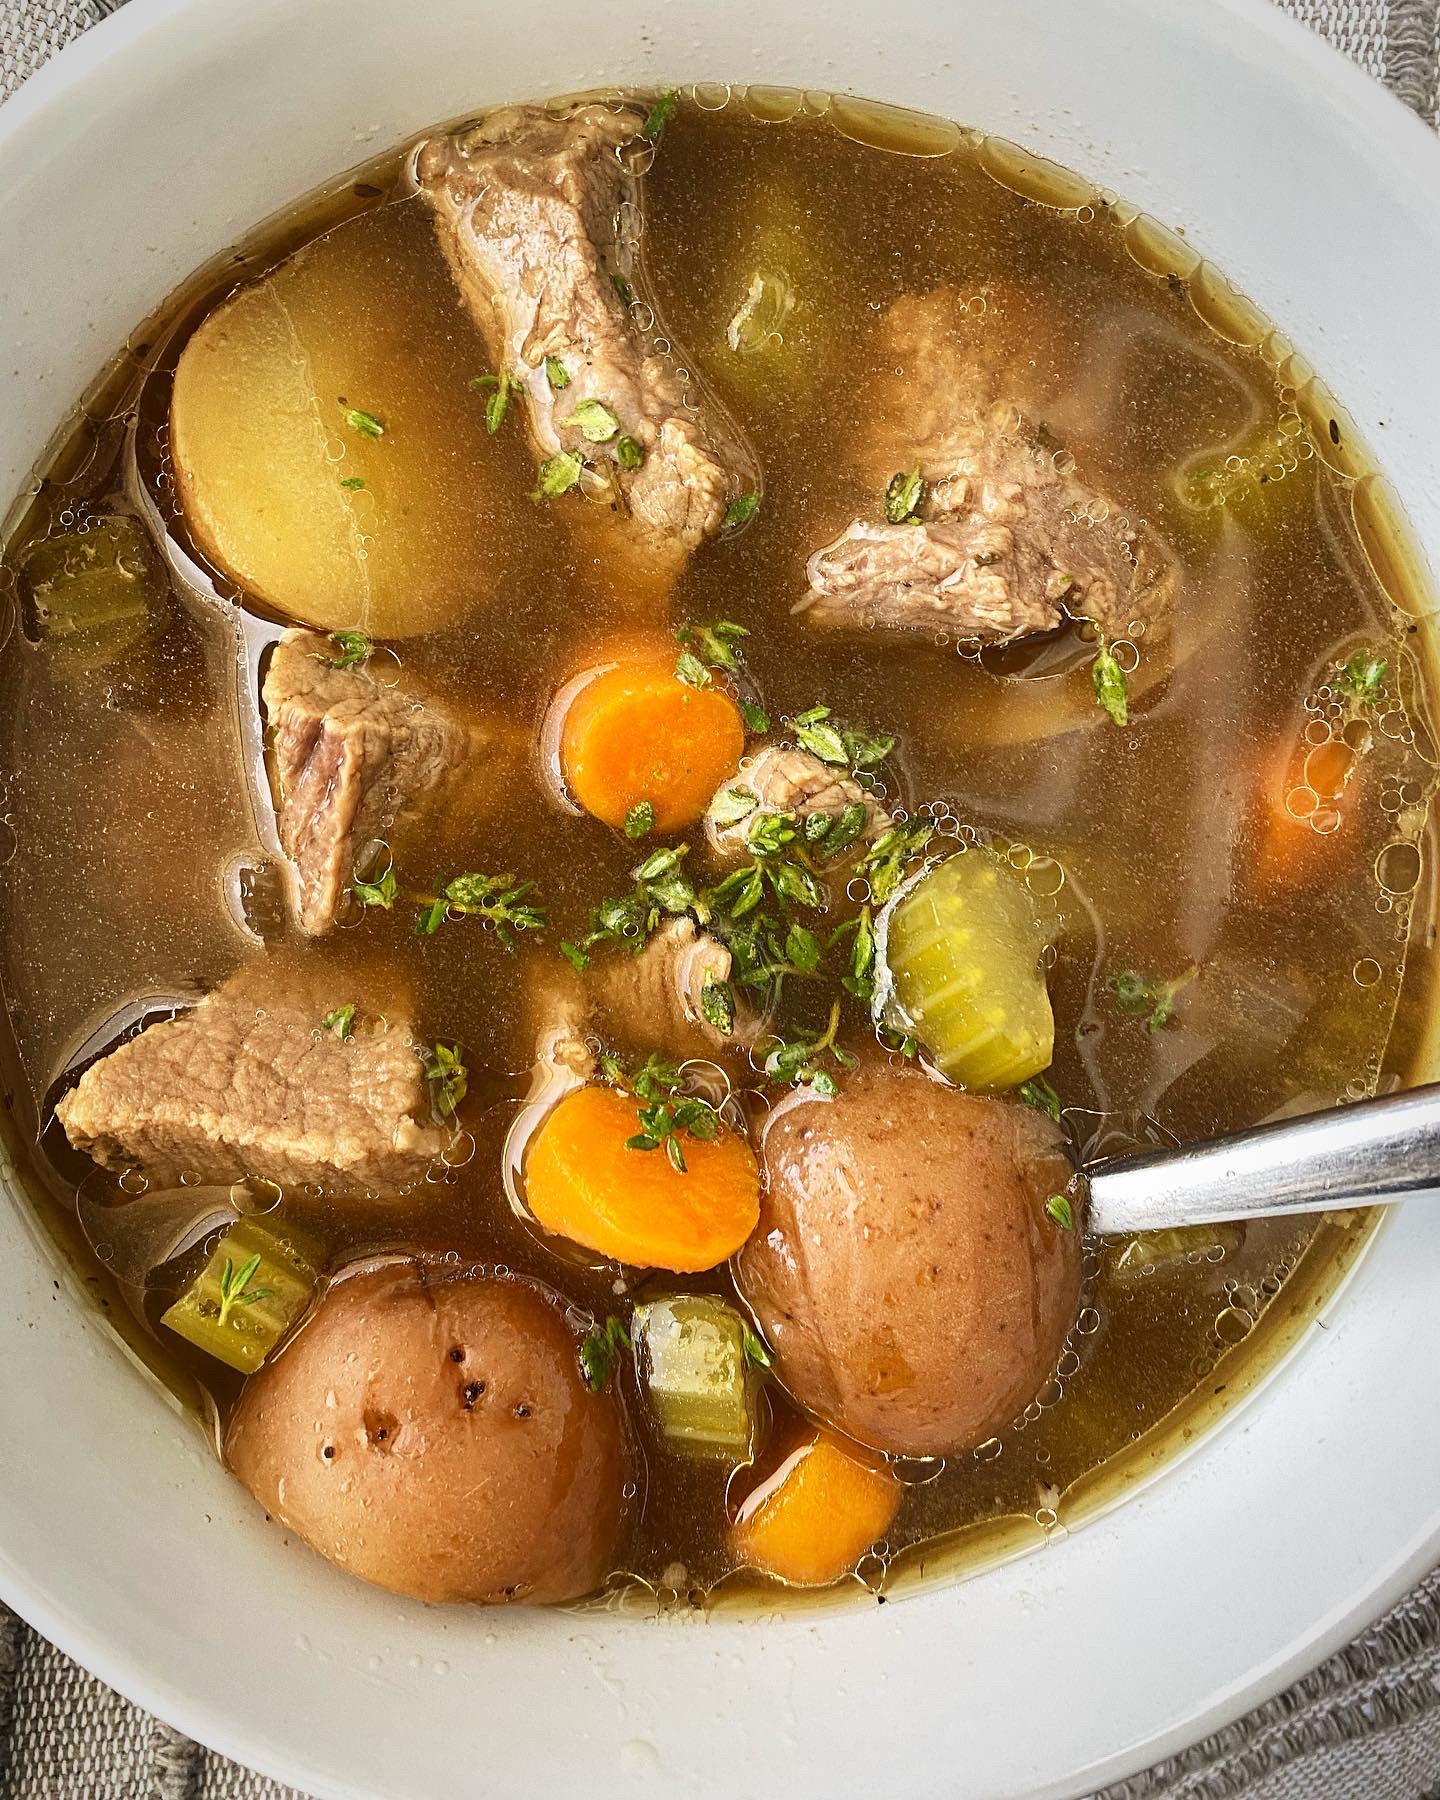 https://fitslowcookerqueen.com/wp-content/uploads/2020/09/slow-cooker-pot-roast-soup-4.jpg